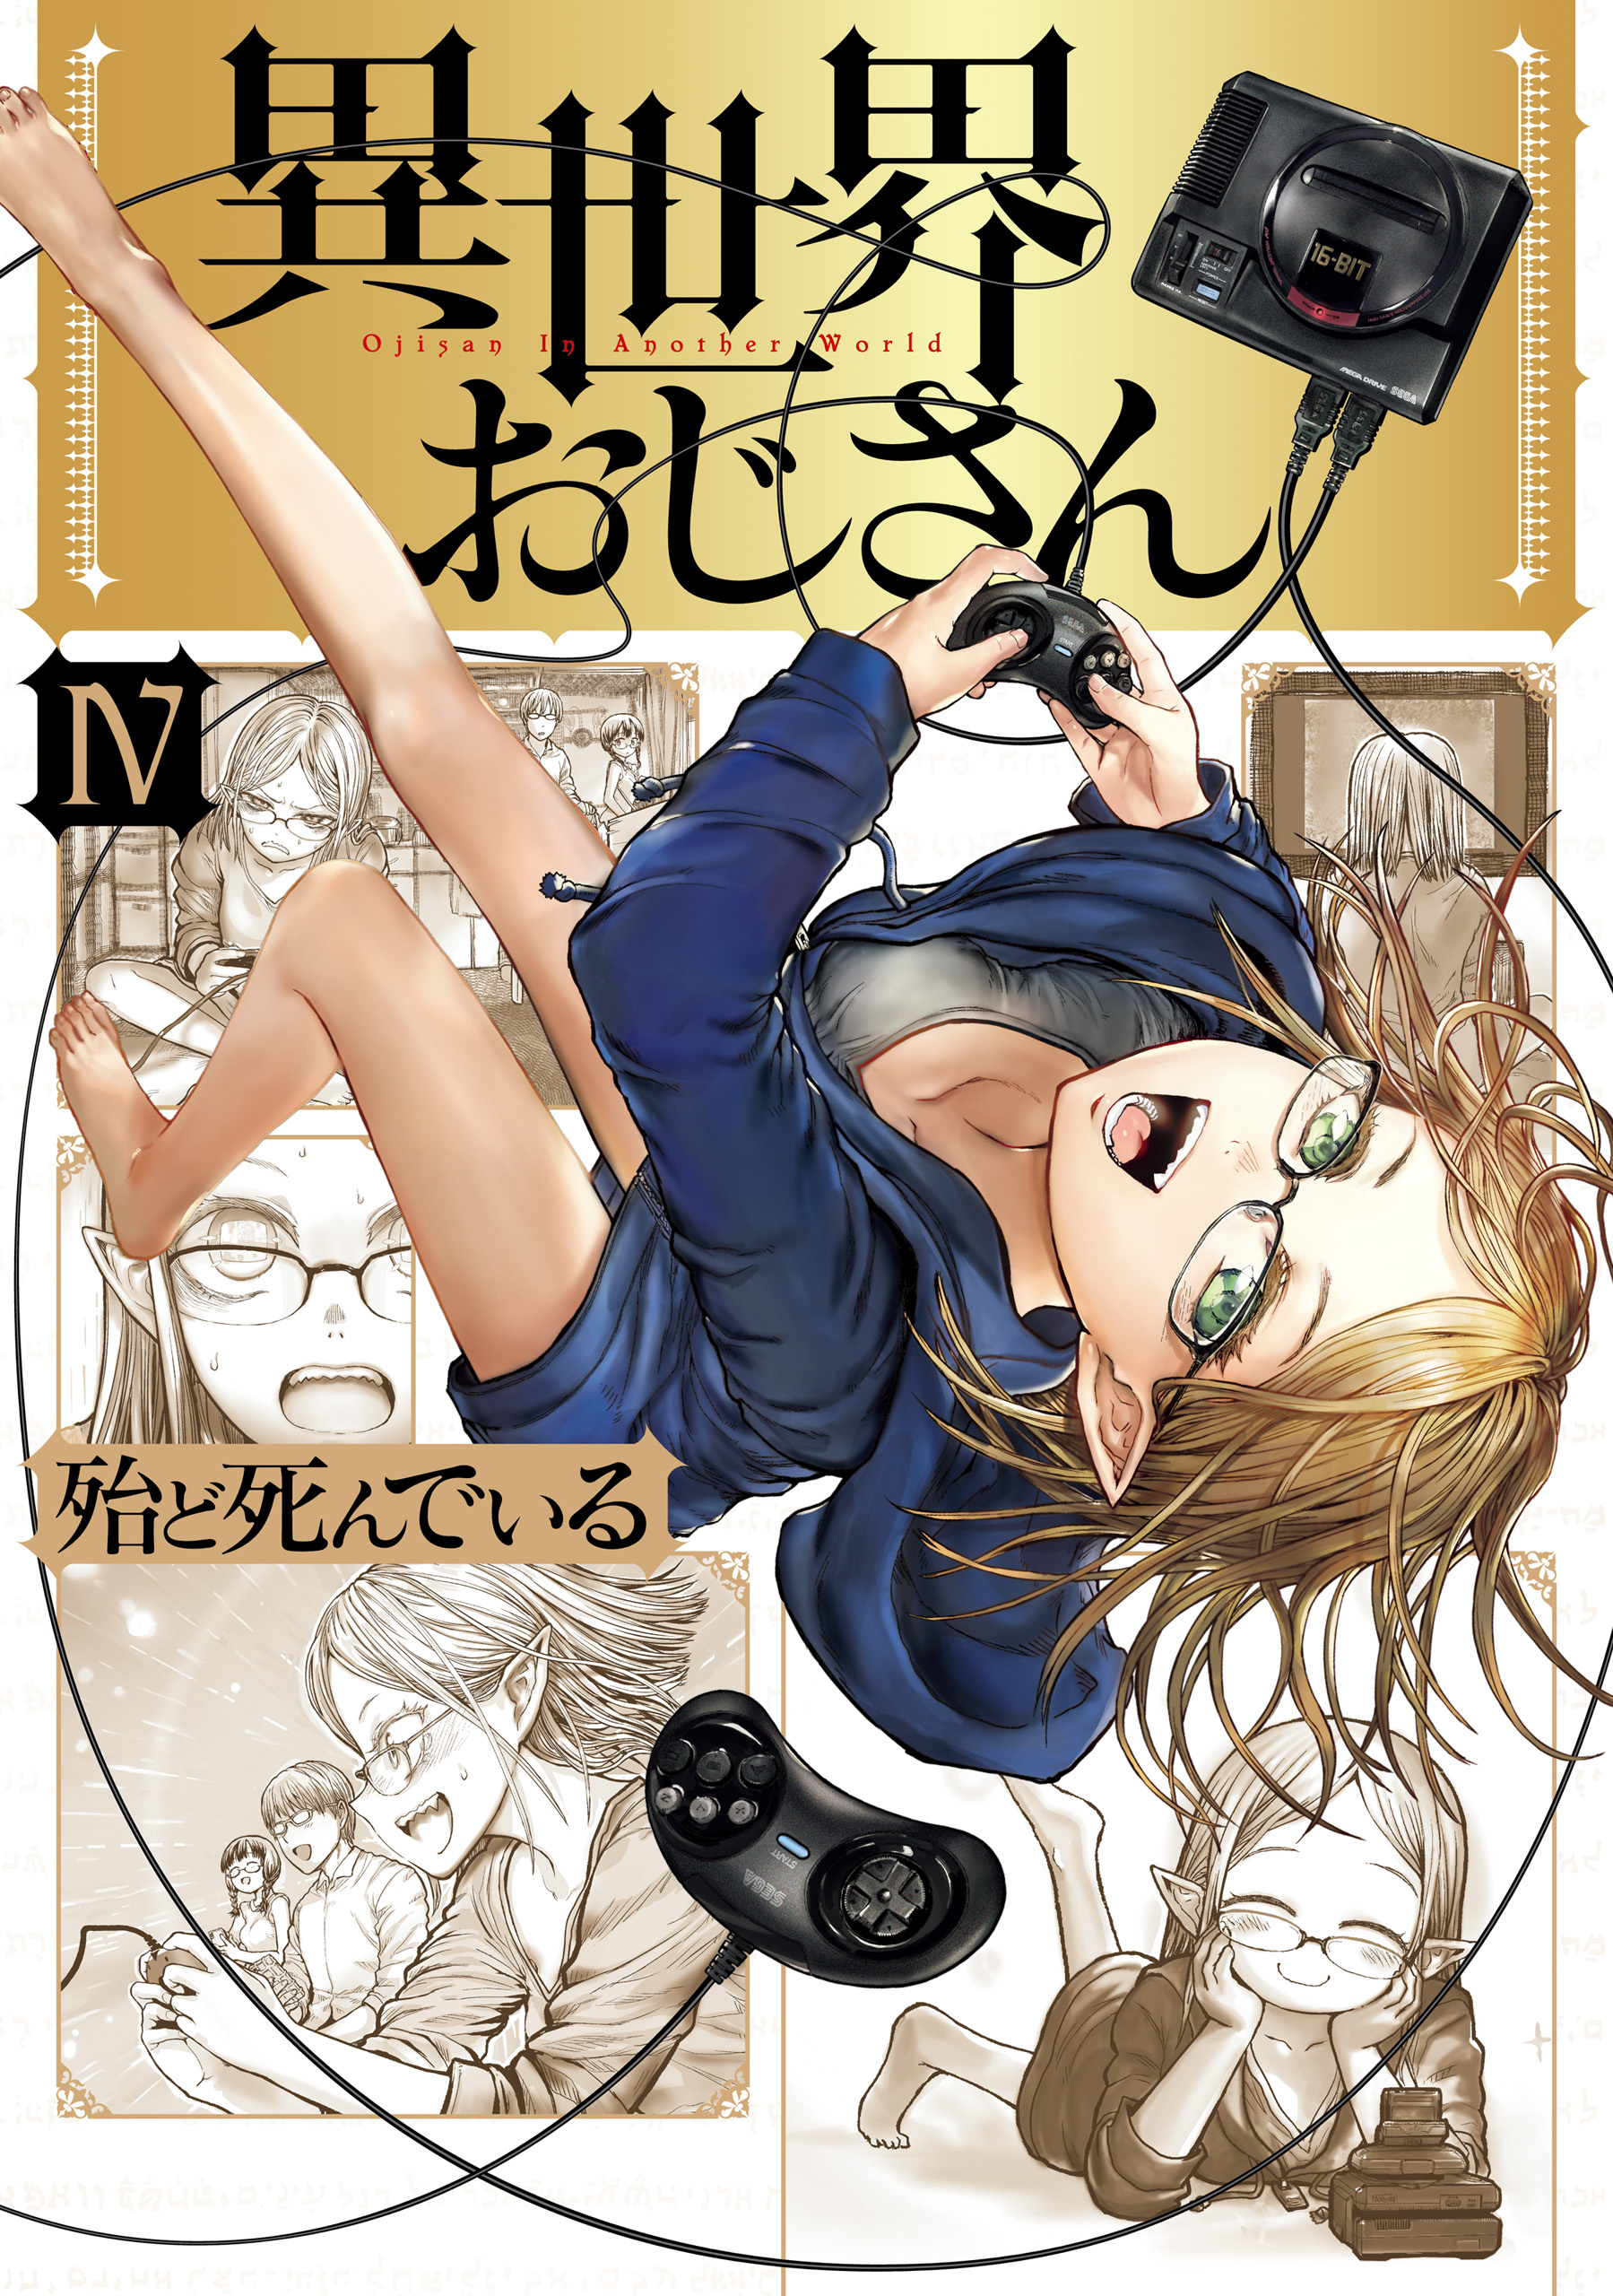 Manga, Isekai Ojisan Wiki